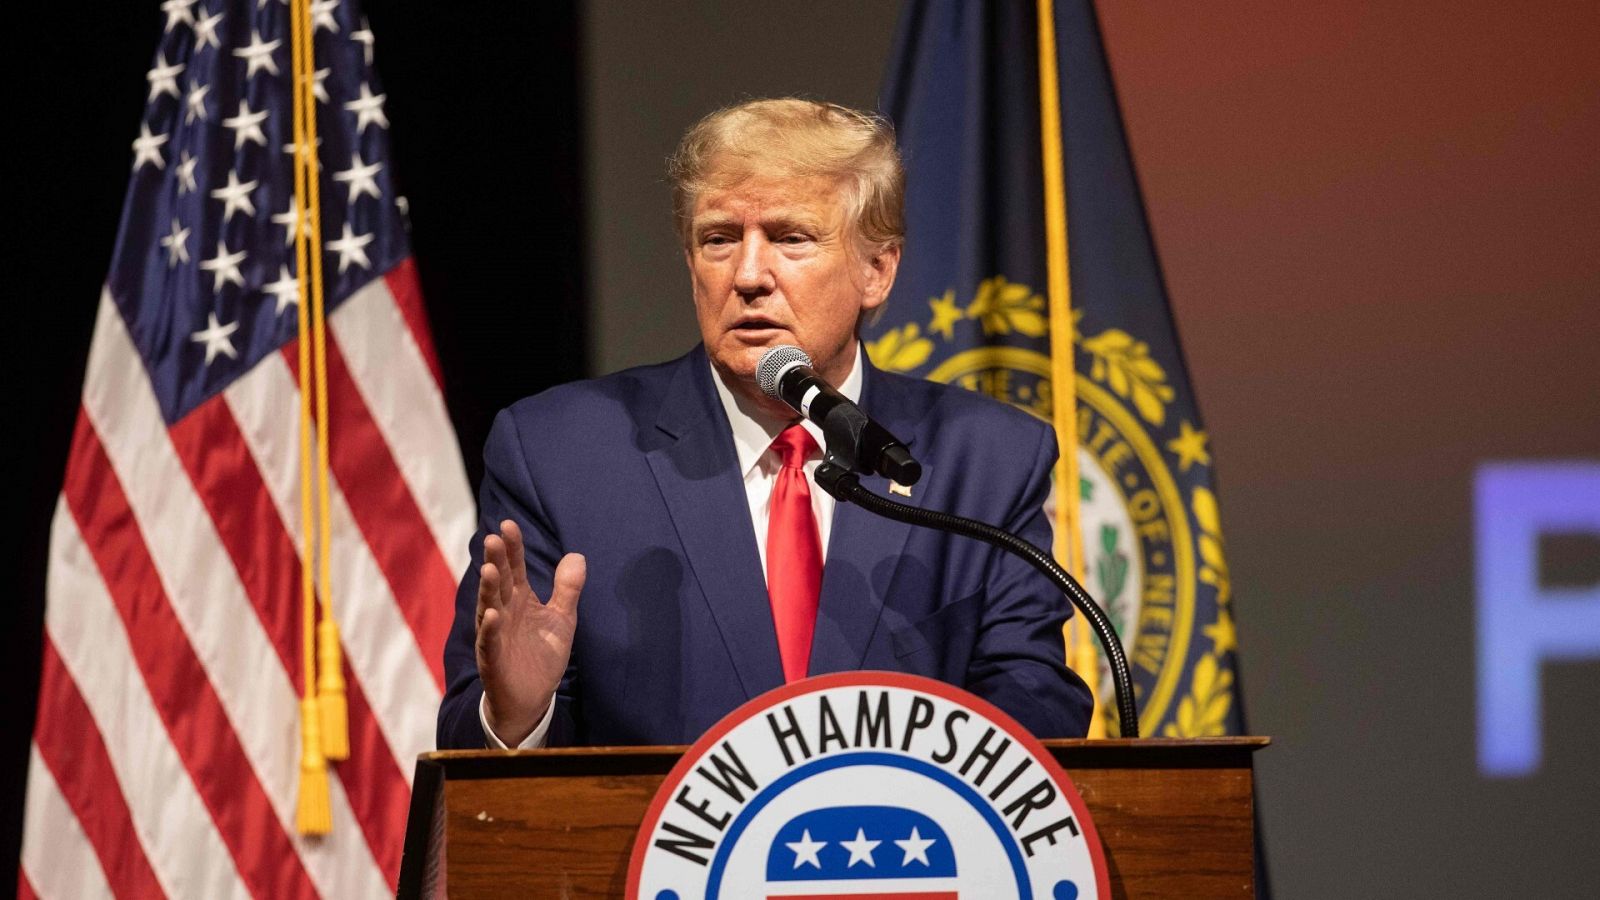 Donald Trump da un discurso en el estado de Nuevo Hampshire